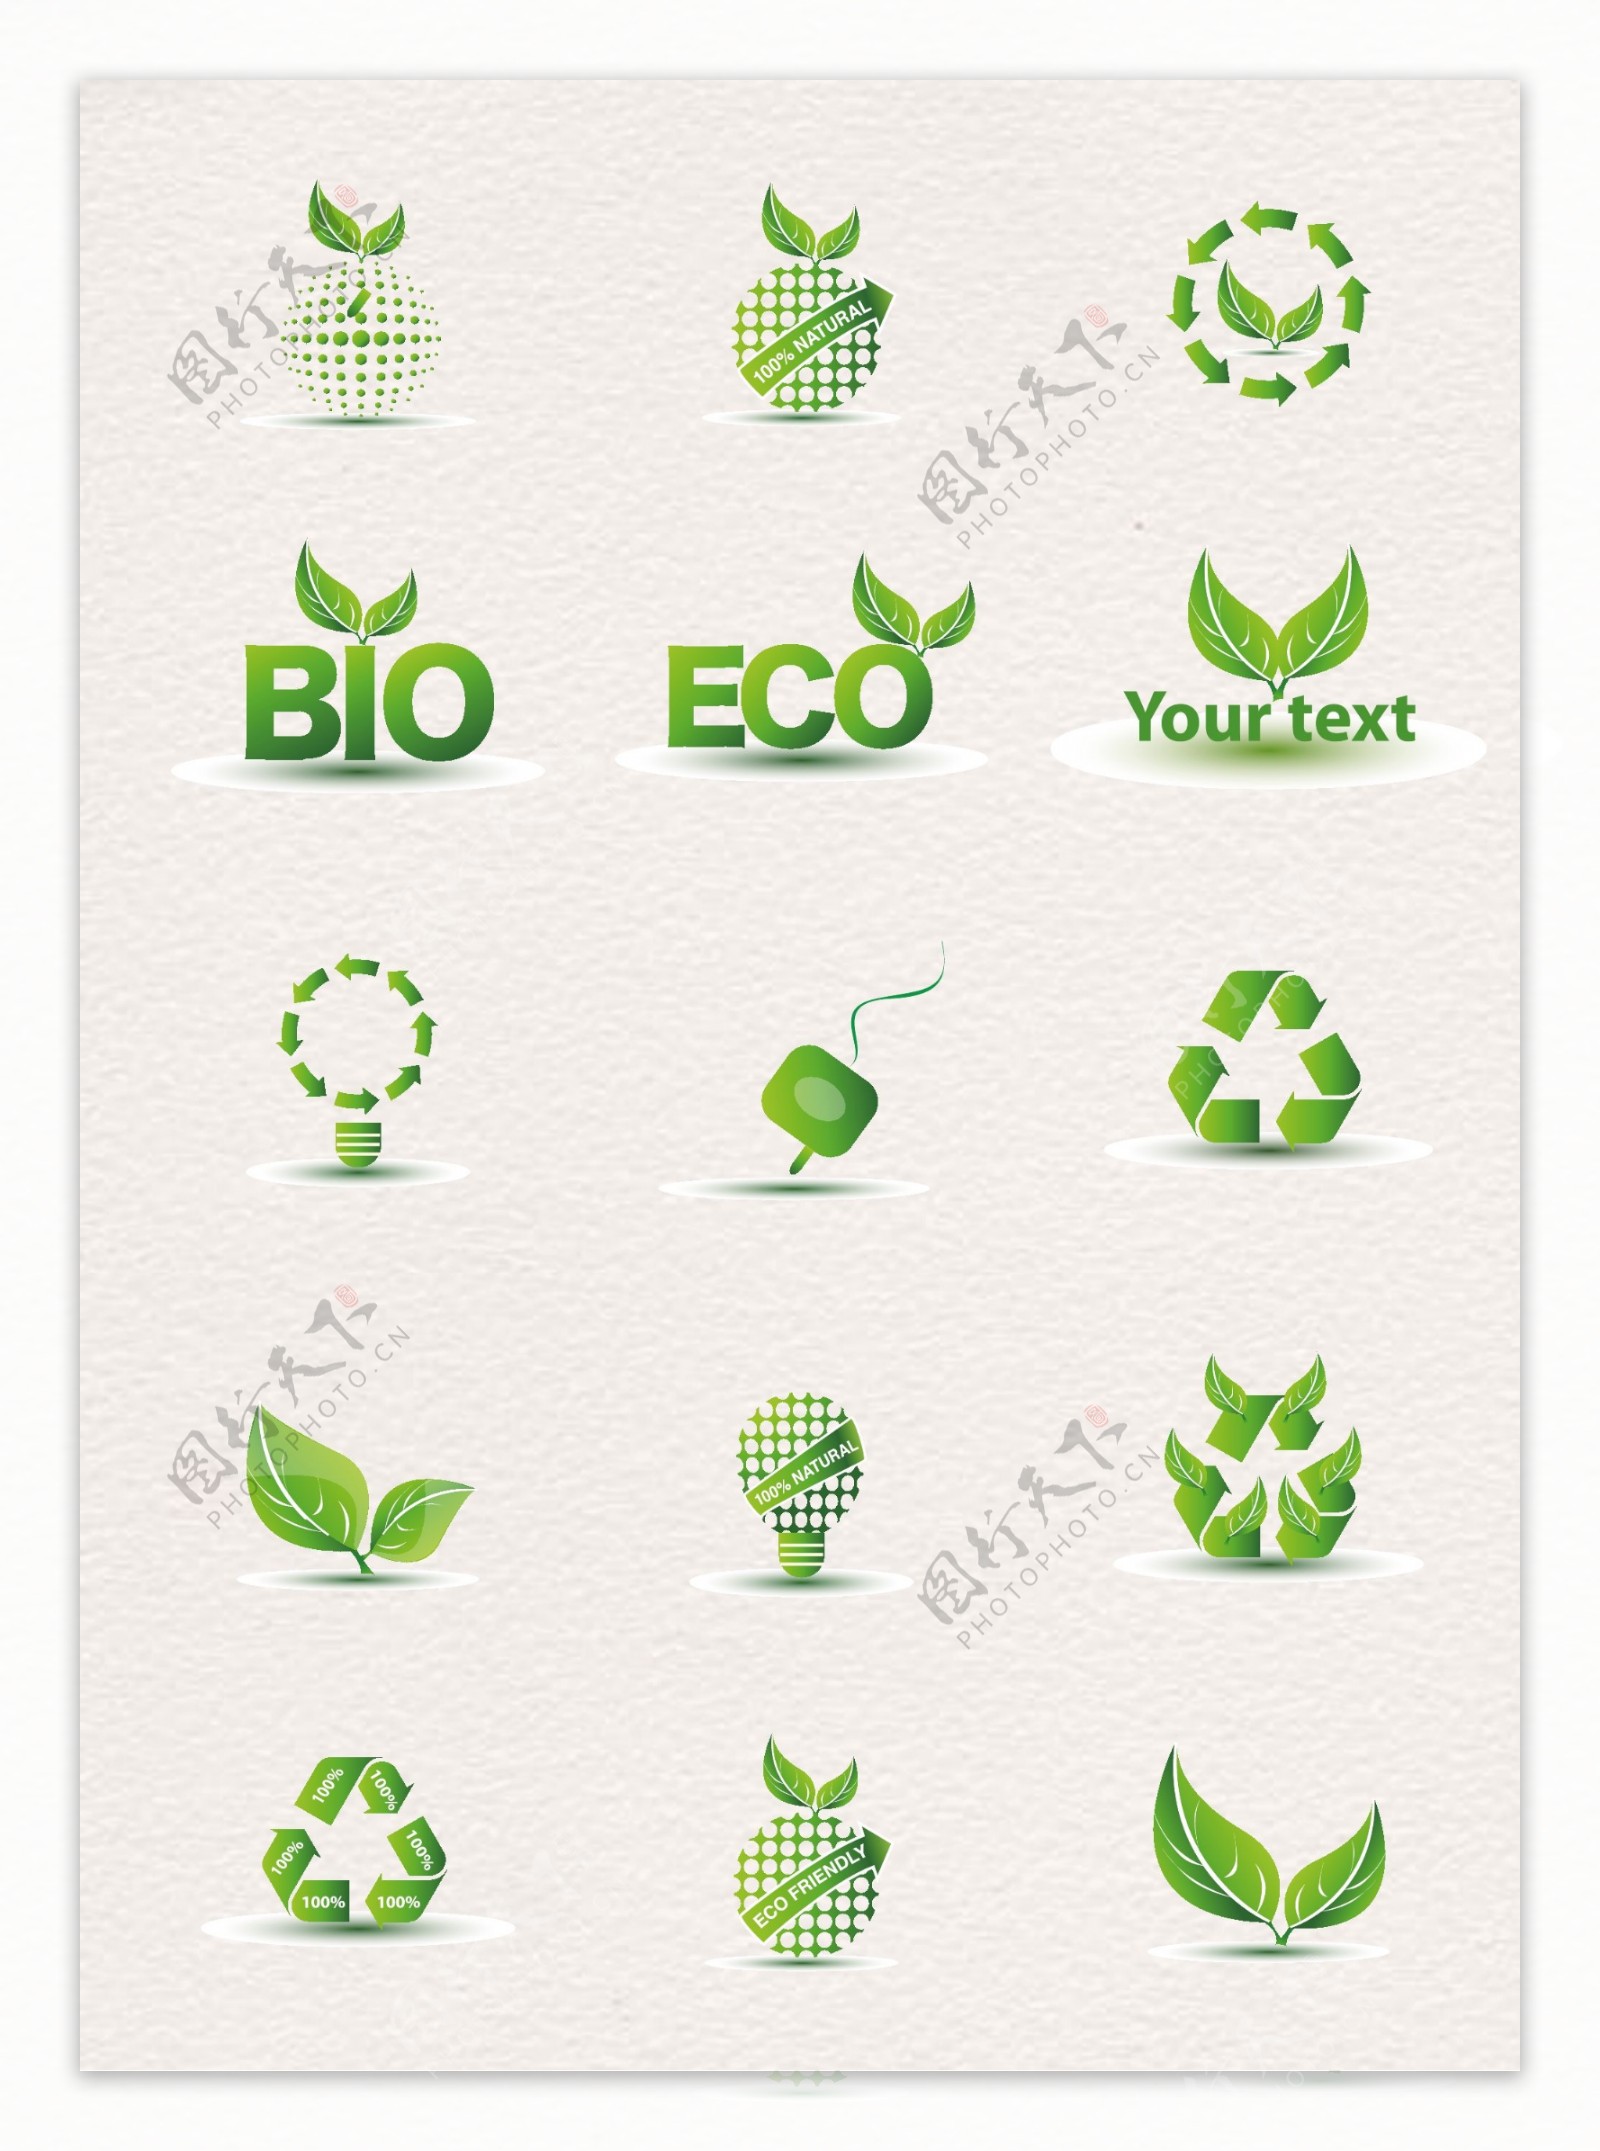 15款绿色环保标签矢量素材